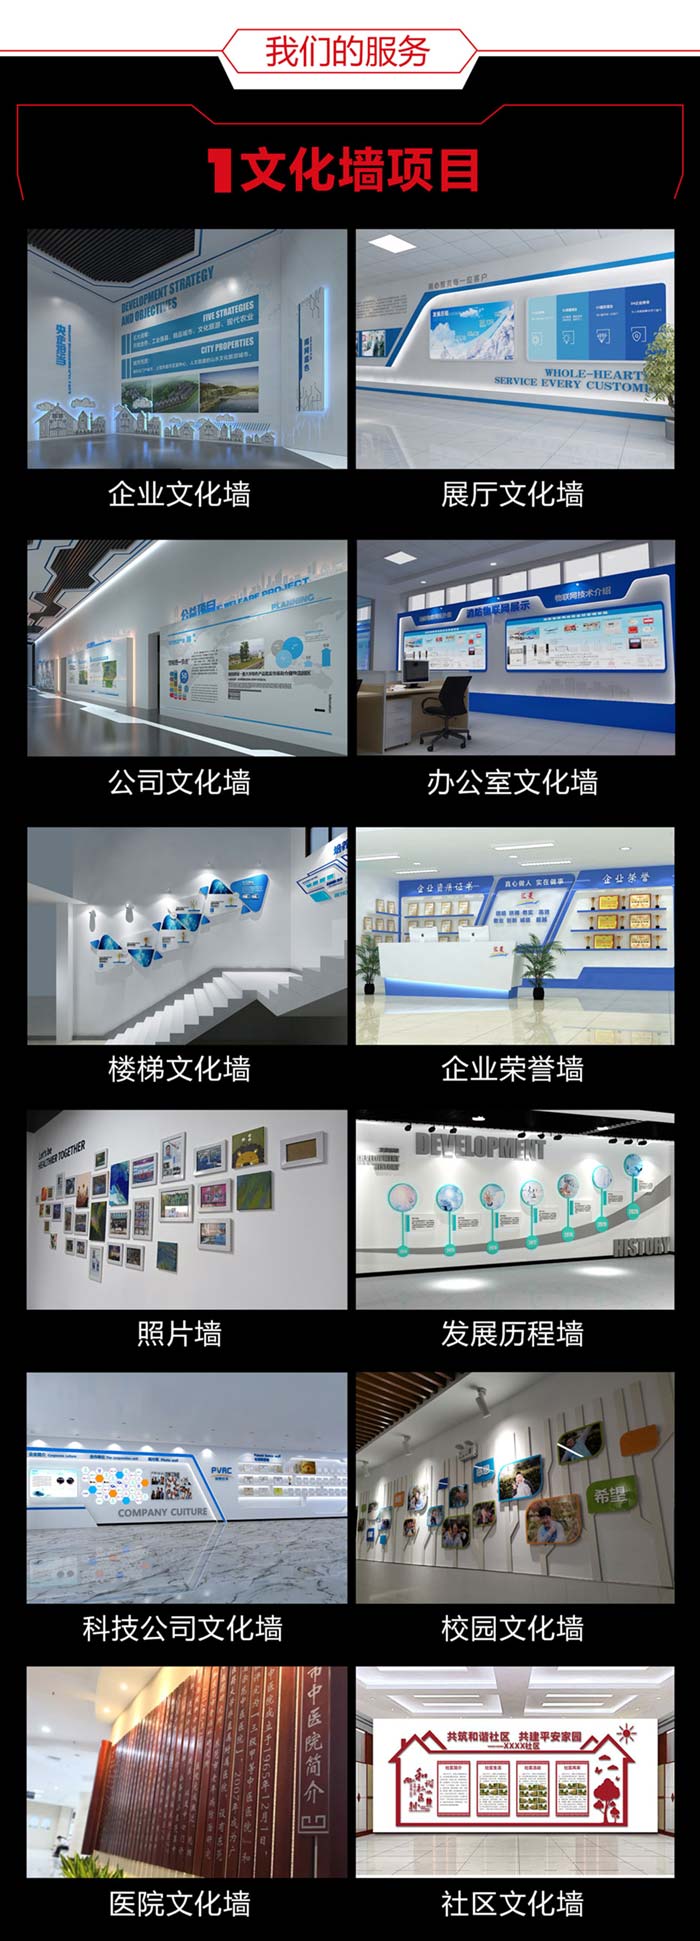 北京北京北京文化墙设计详情页700切片图_04.jpg